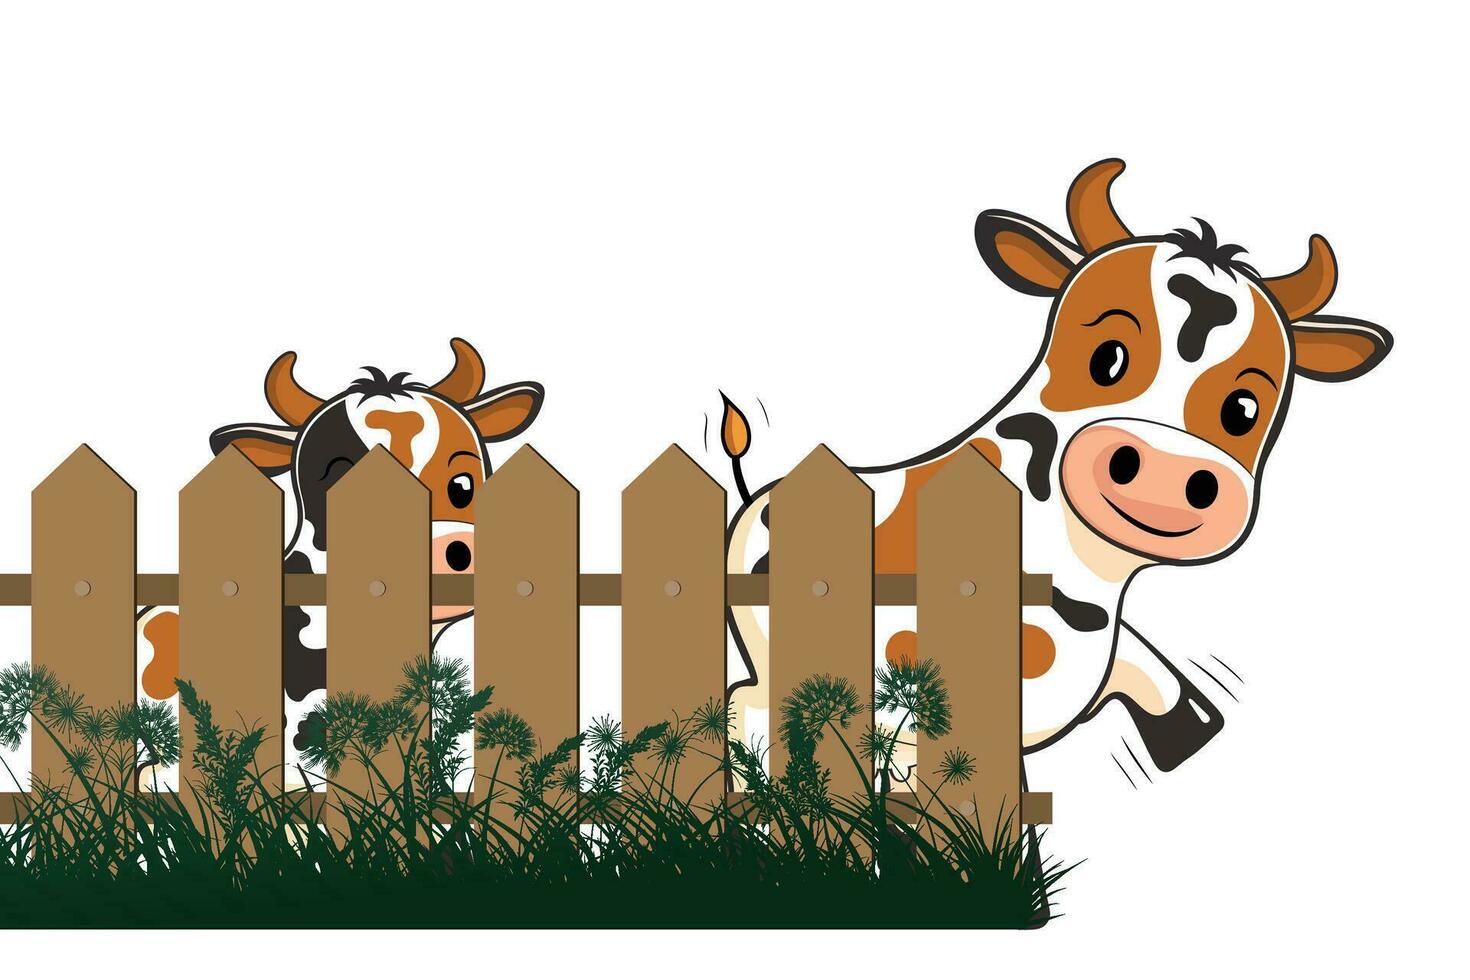 vache avec bois clôture plat dessin animé style vecteur